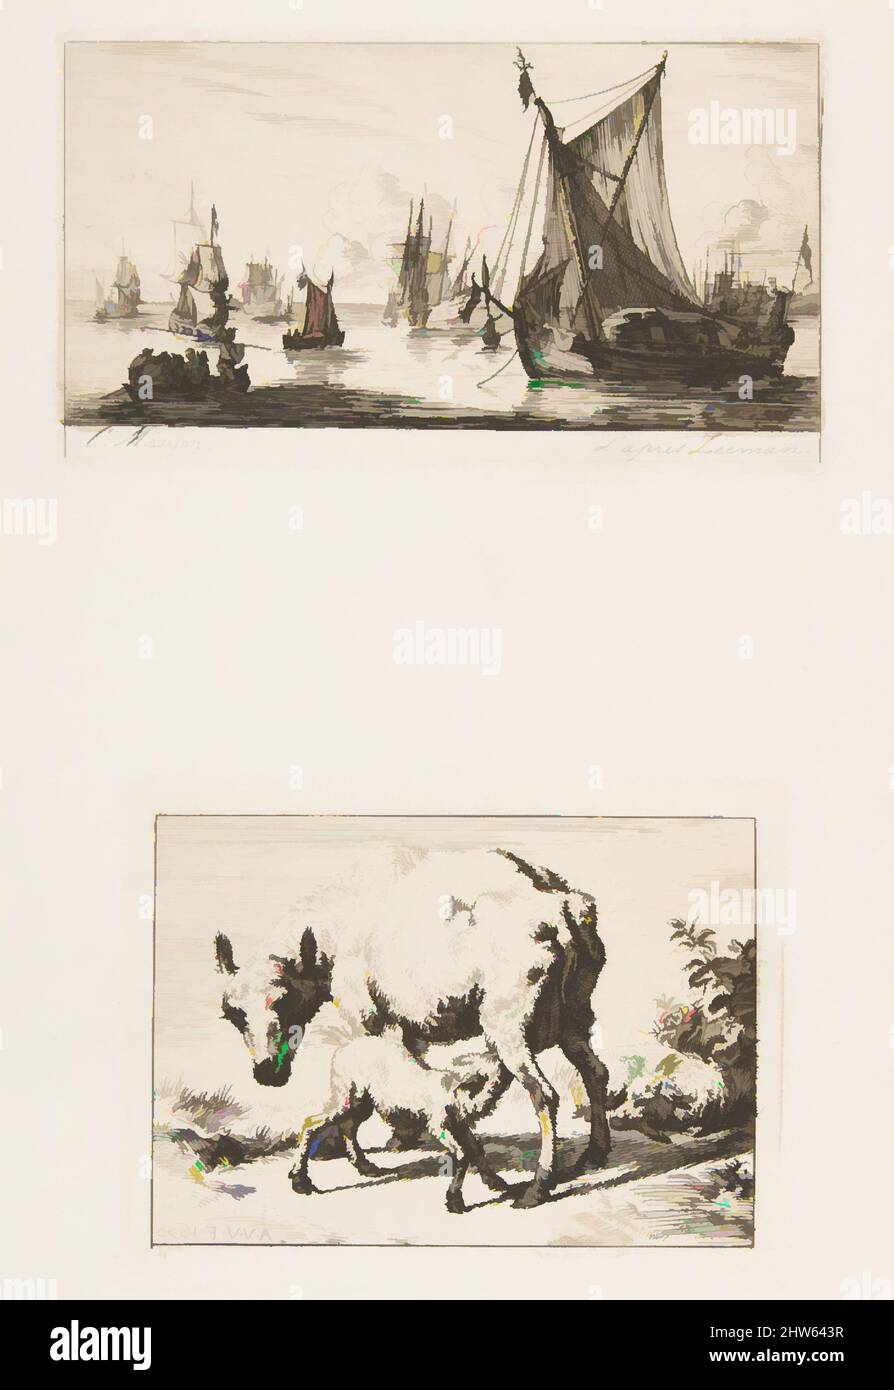 Art inspiré par les pêcheurs de la mer du Sud; Ewe avec deux Lambs, 1850, gravures sur papier vélin; publié dans l'artiste (1861), assiette: 2 5/8 x 4 11/16 po. (6,6 x 11,9 cm), tirages, Charles Meryon (français, 1821–1868), d'après Reinier Nooms, Appelé Zeeman (néerlandais, Amsterdam ca. 1623–1664 Amsterdam, œuvres classiques modernisées par Artotop avec une touche de modernité. Formes, couleur et valeur, impact visuel accrocheur sur l'art émotions par la liberté d'œuvres d'art d'une manière contemporaine. Un message intemporel qui cherche une nouvelle direction créative. Artistes qui se tournent vers le support numérique et créent le NFT Artotop Banque D'Images